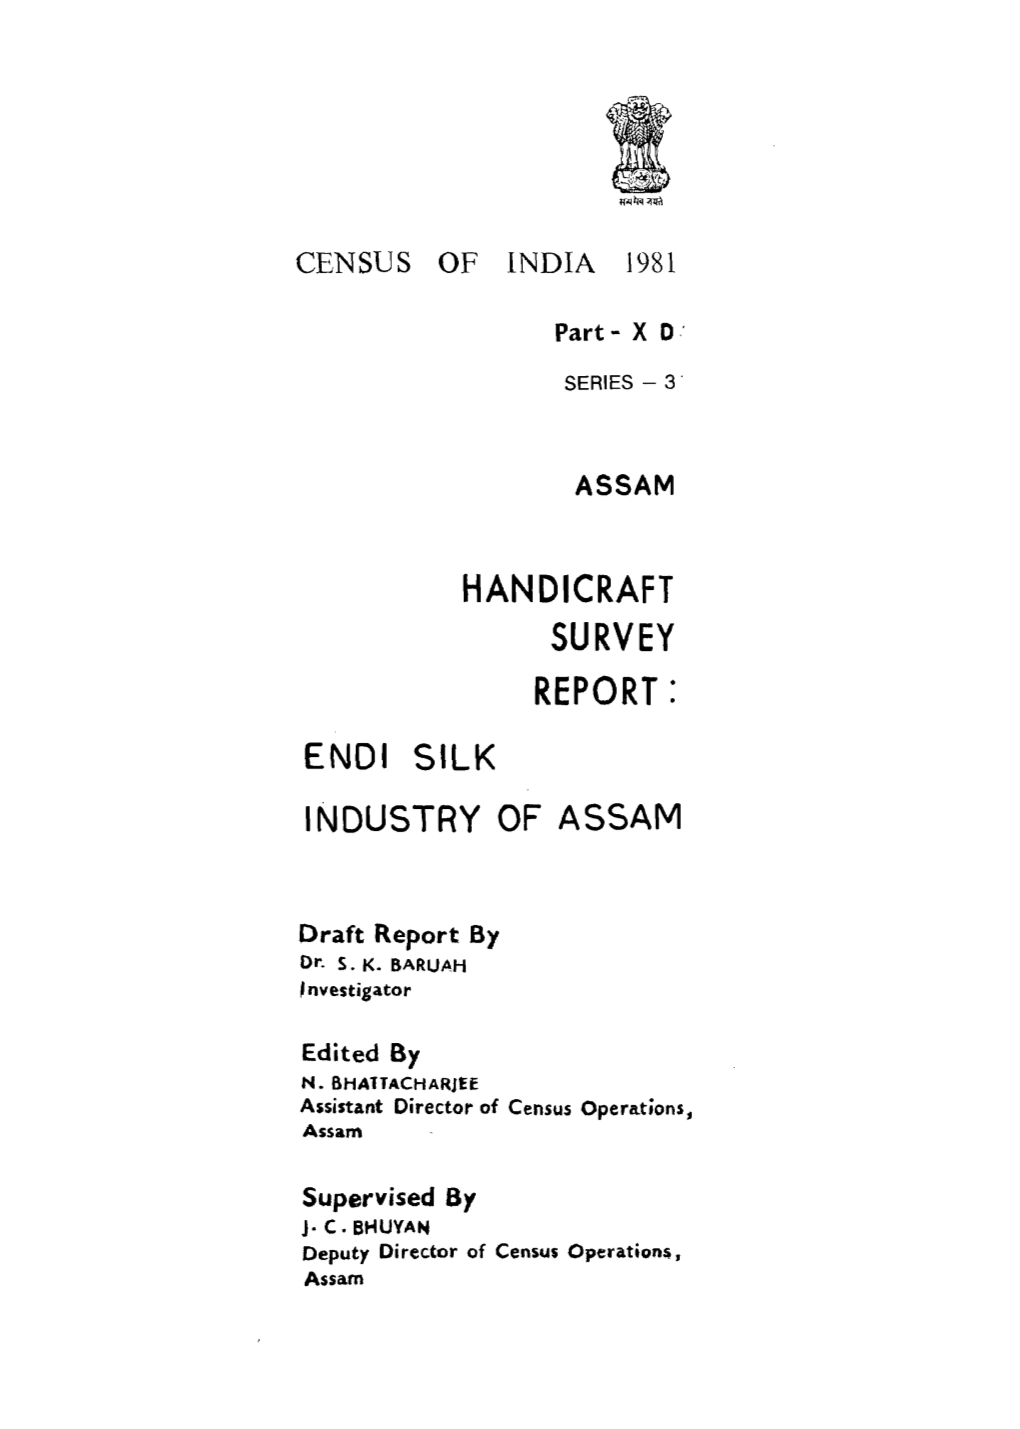 Handicraft Survey Report, Endi Silk Industry of Assam, Part X-D, Series